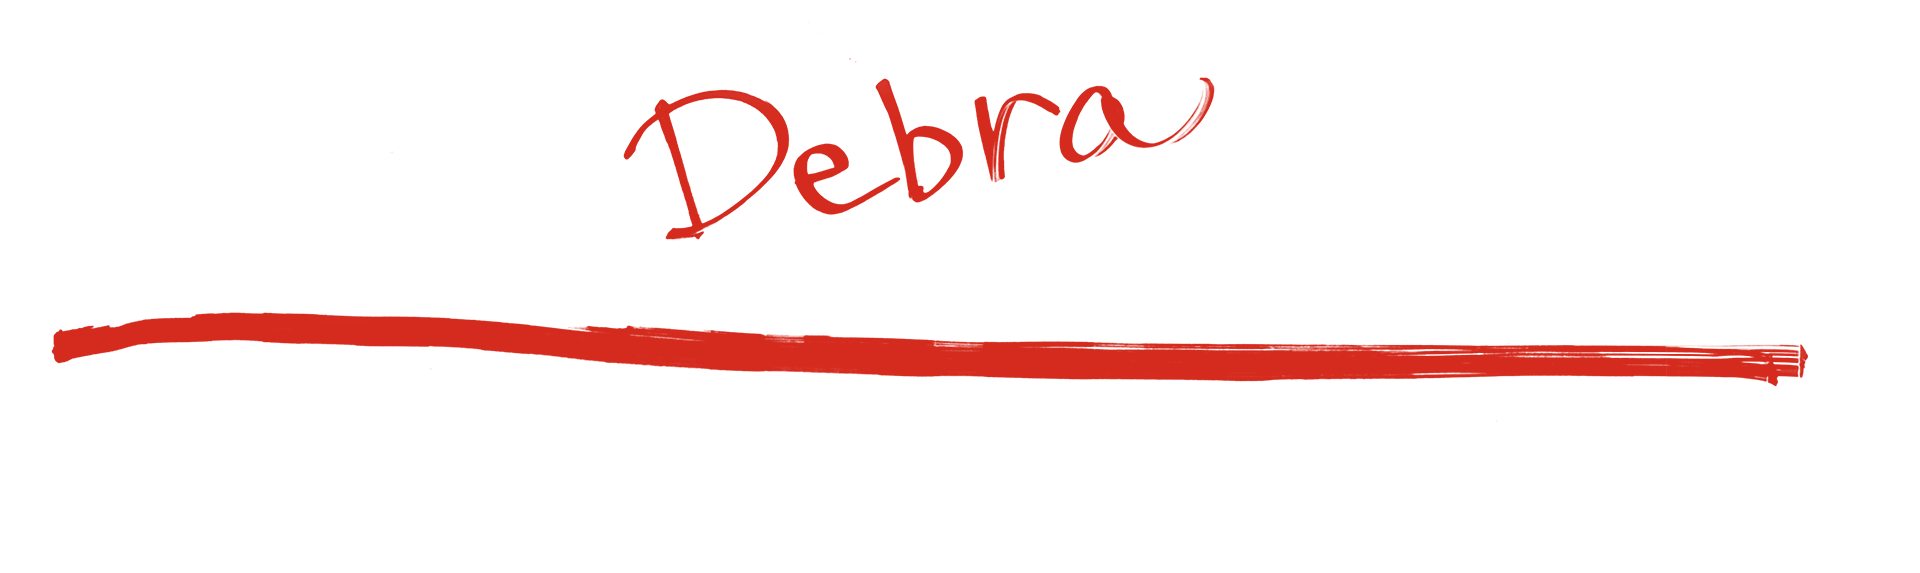 Debra - Homeless